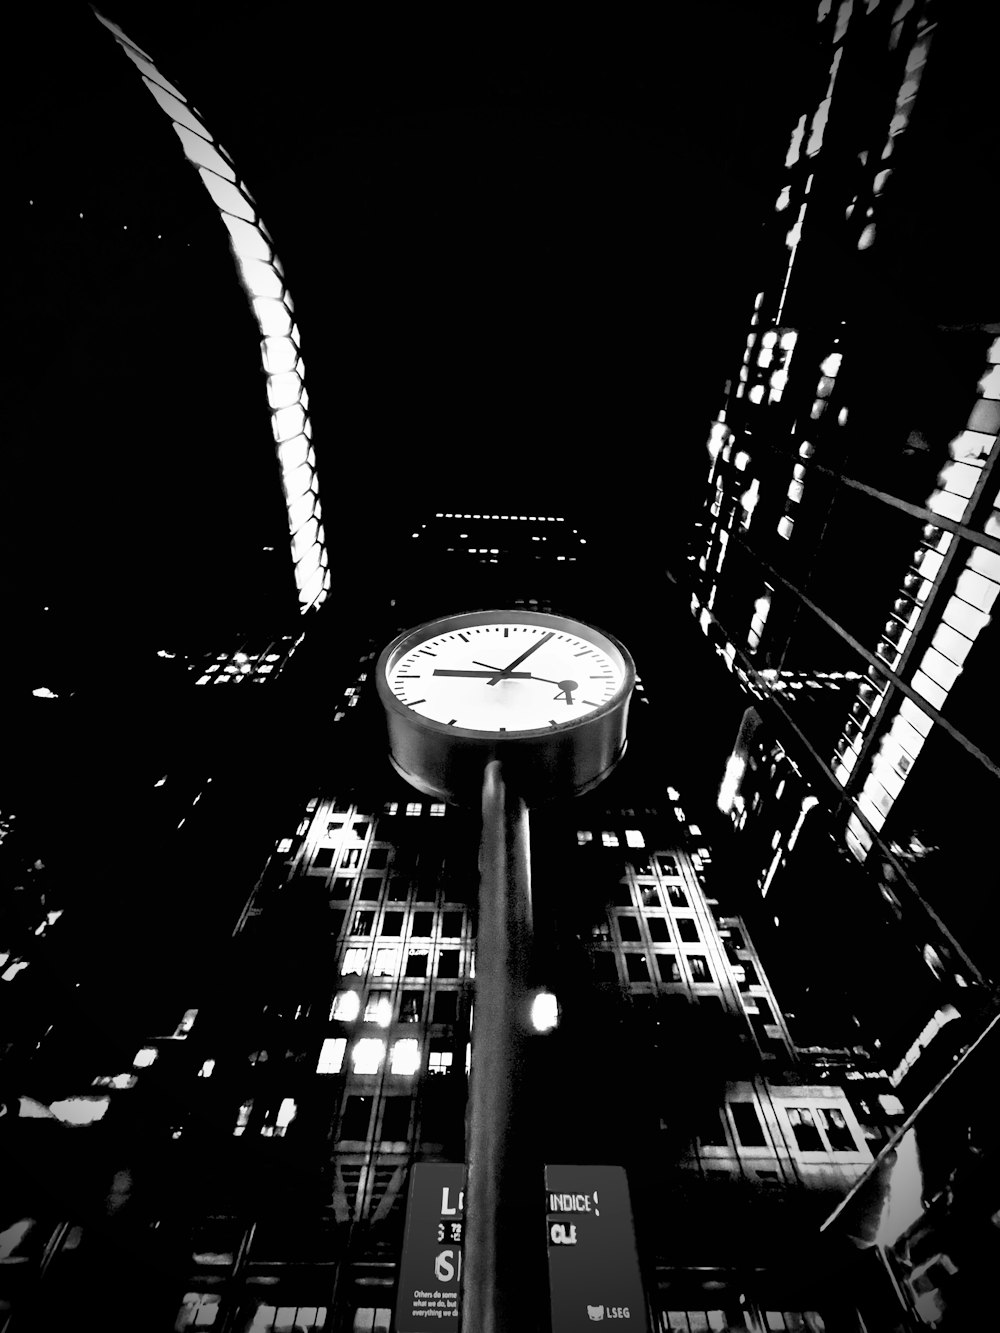 Una foto in bianco e nero di un orologio nel mezzo di una città